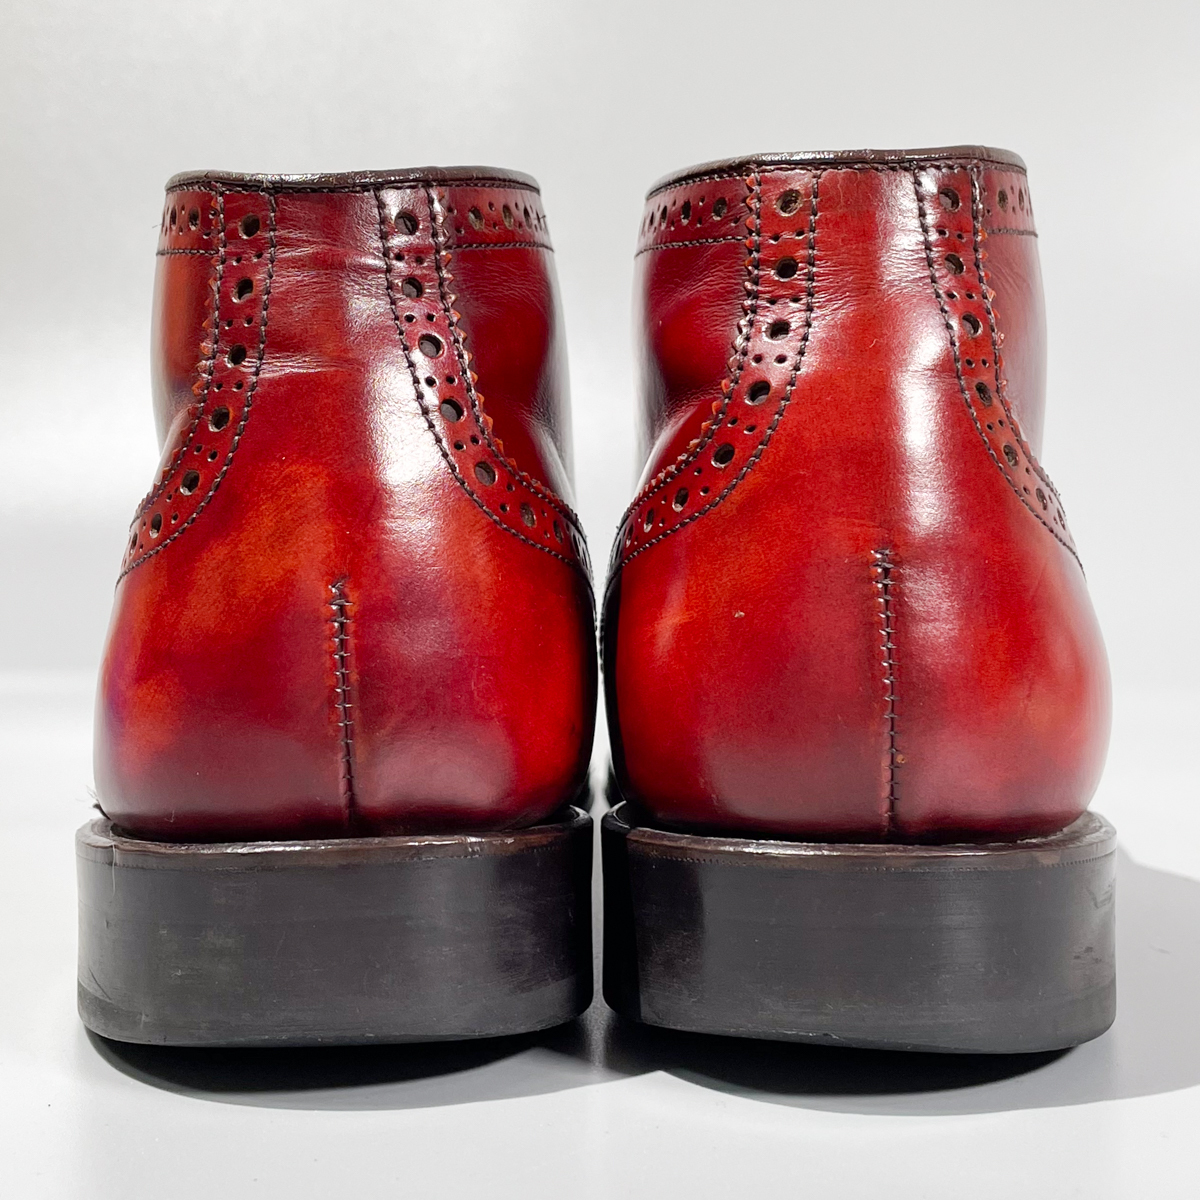 即決 REGAL リーガル ショートブーツ ウイングチップ ハイカット バーガンディ 赤茶色 メンズ 本革 革靴 25.5cm ビジネスシューズ A1892_画像4